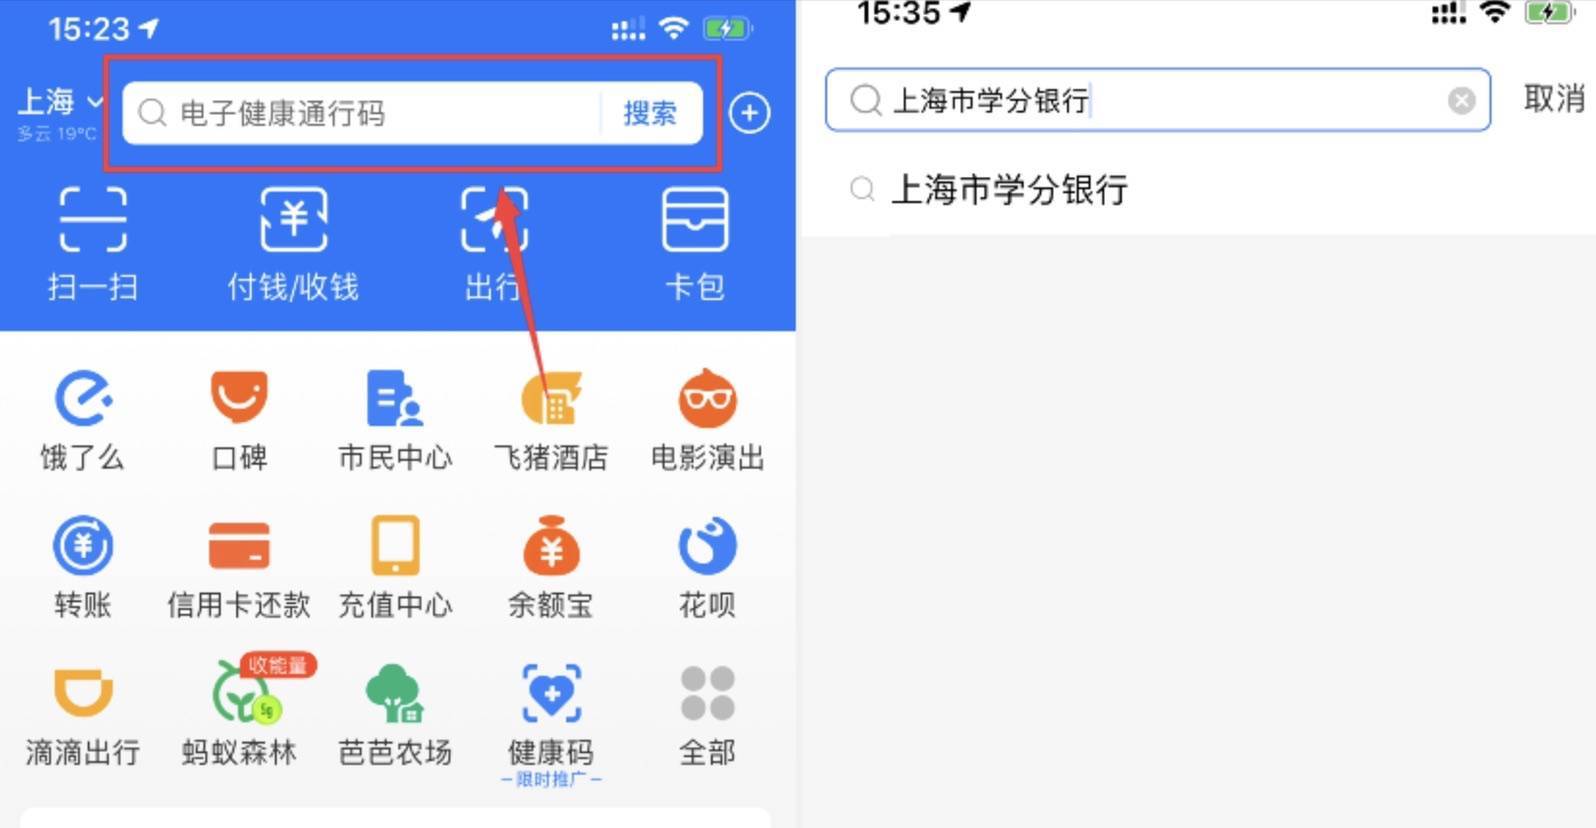 “申学码”正式上线 “上传”“扫码”“亮证”三大功能服务上海市民